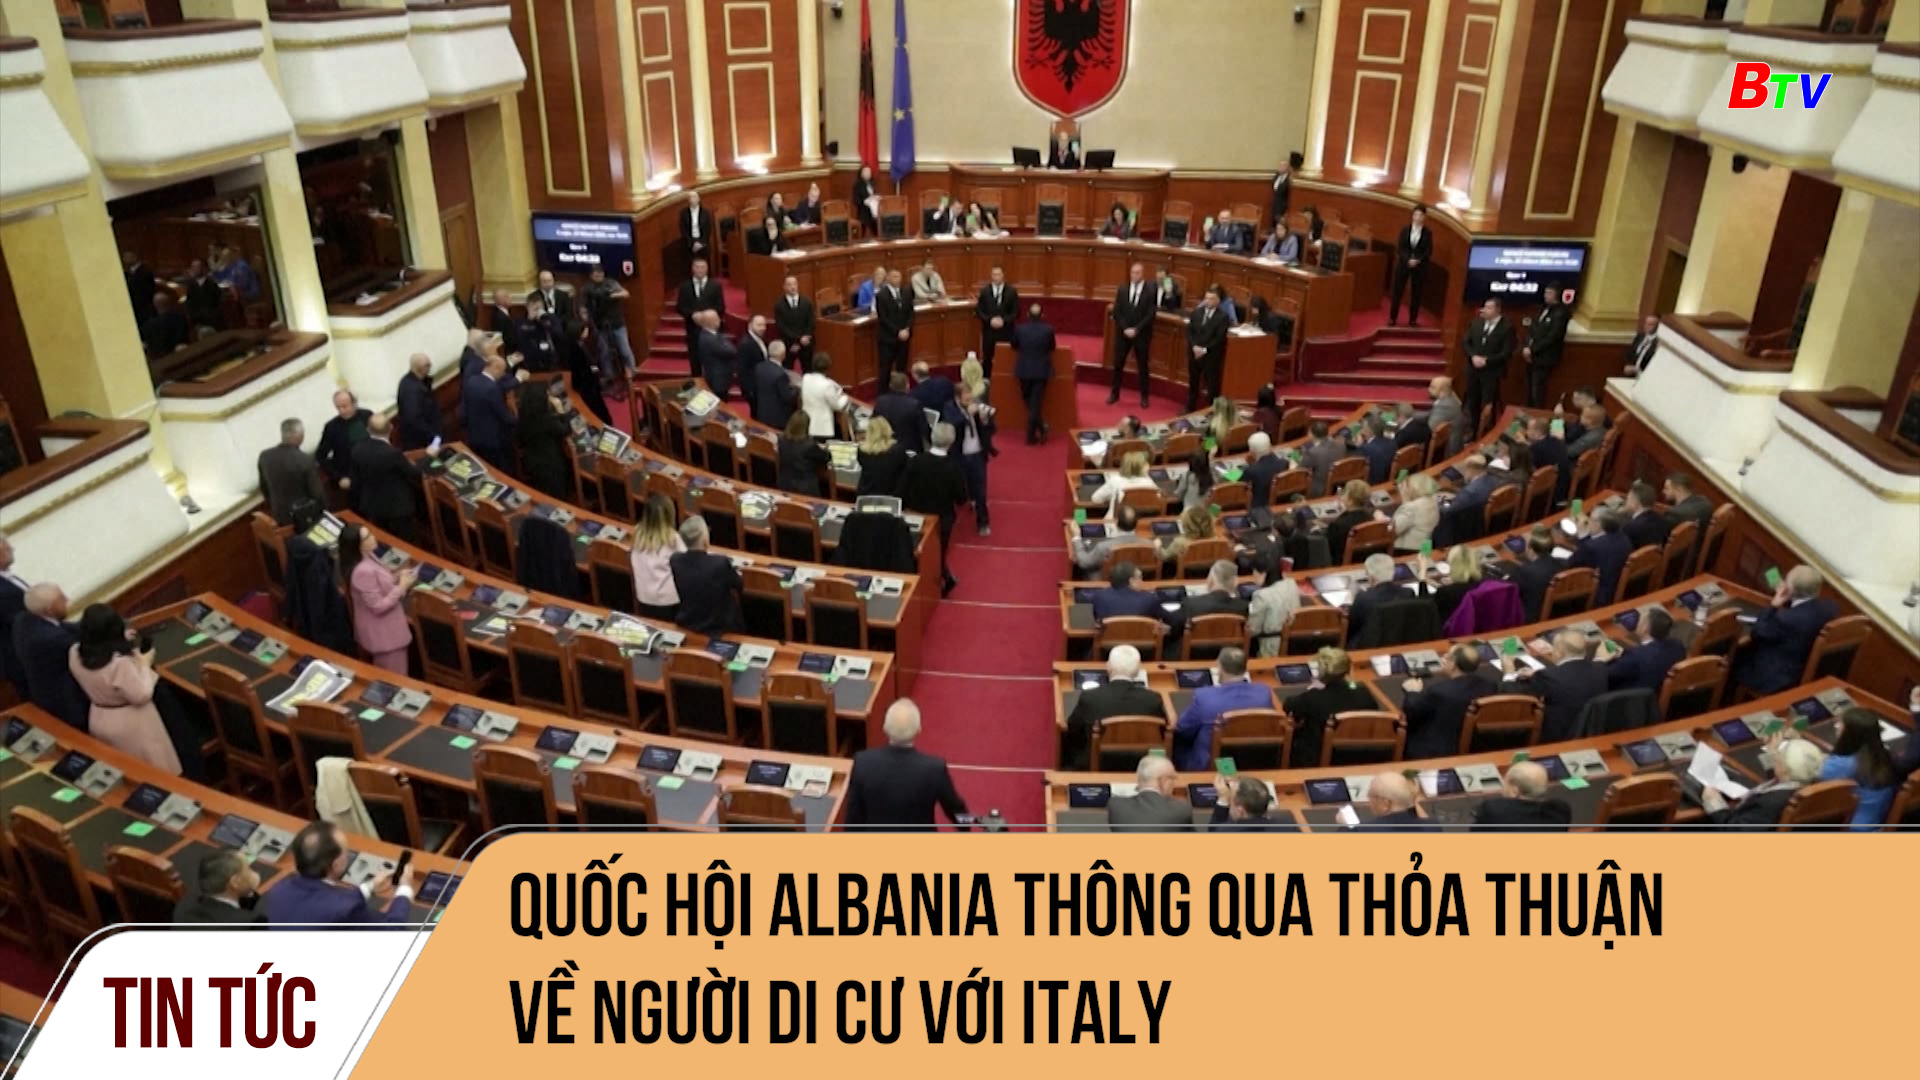 Quốc hội Albania thông qua thỏa thuận về người di cư với Italy